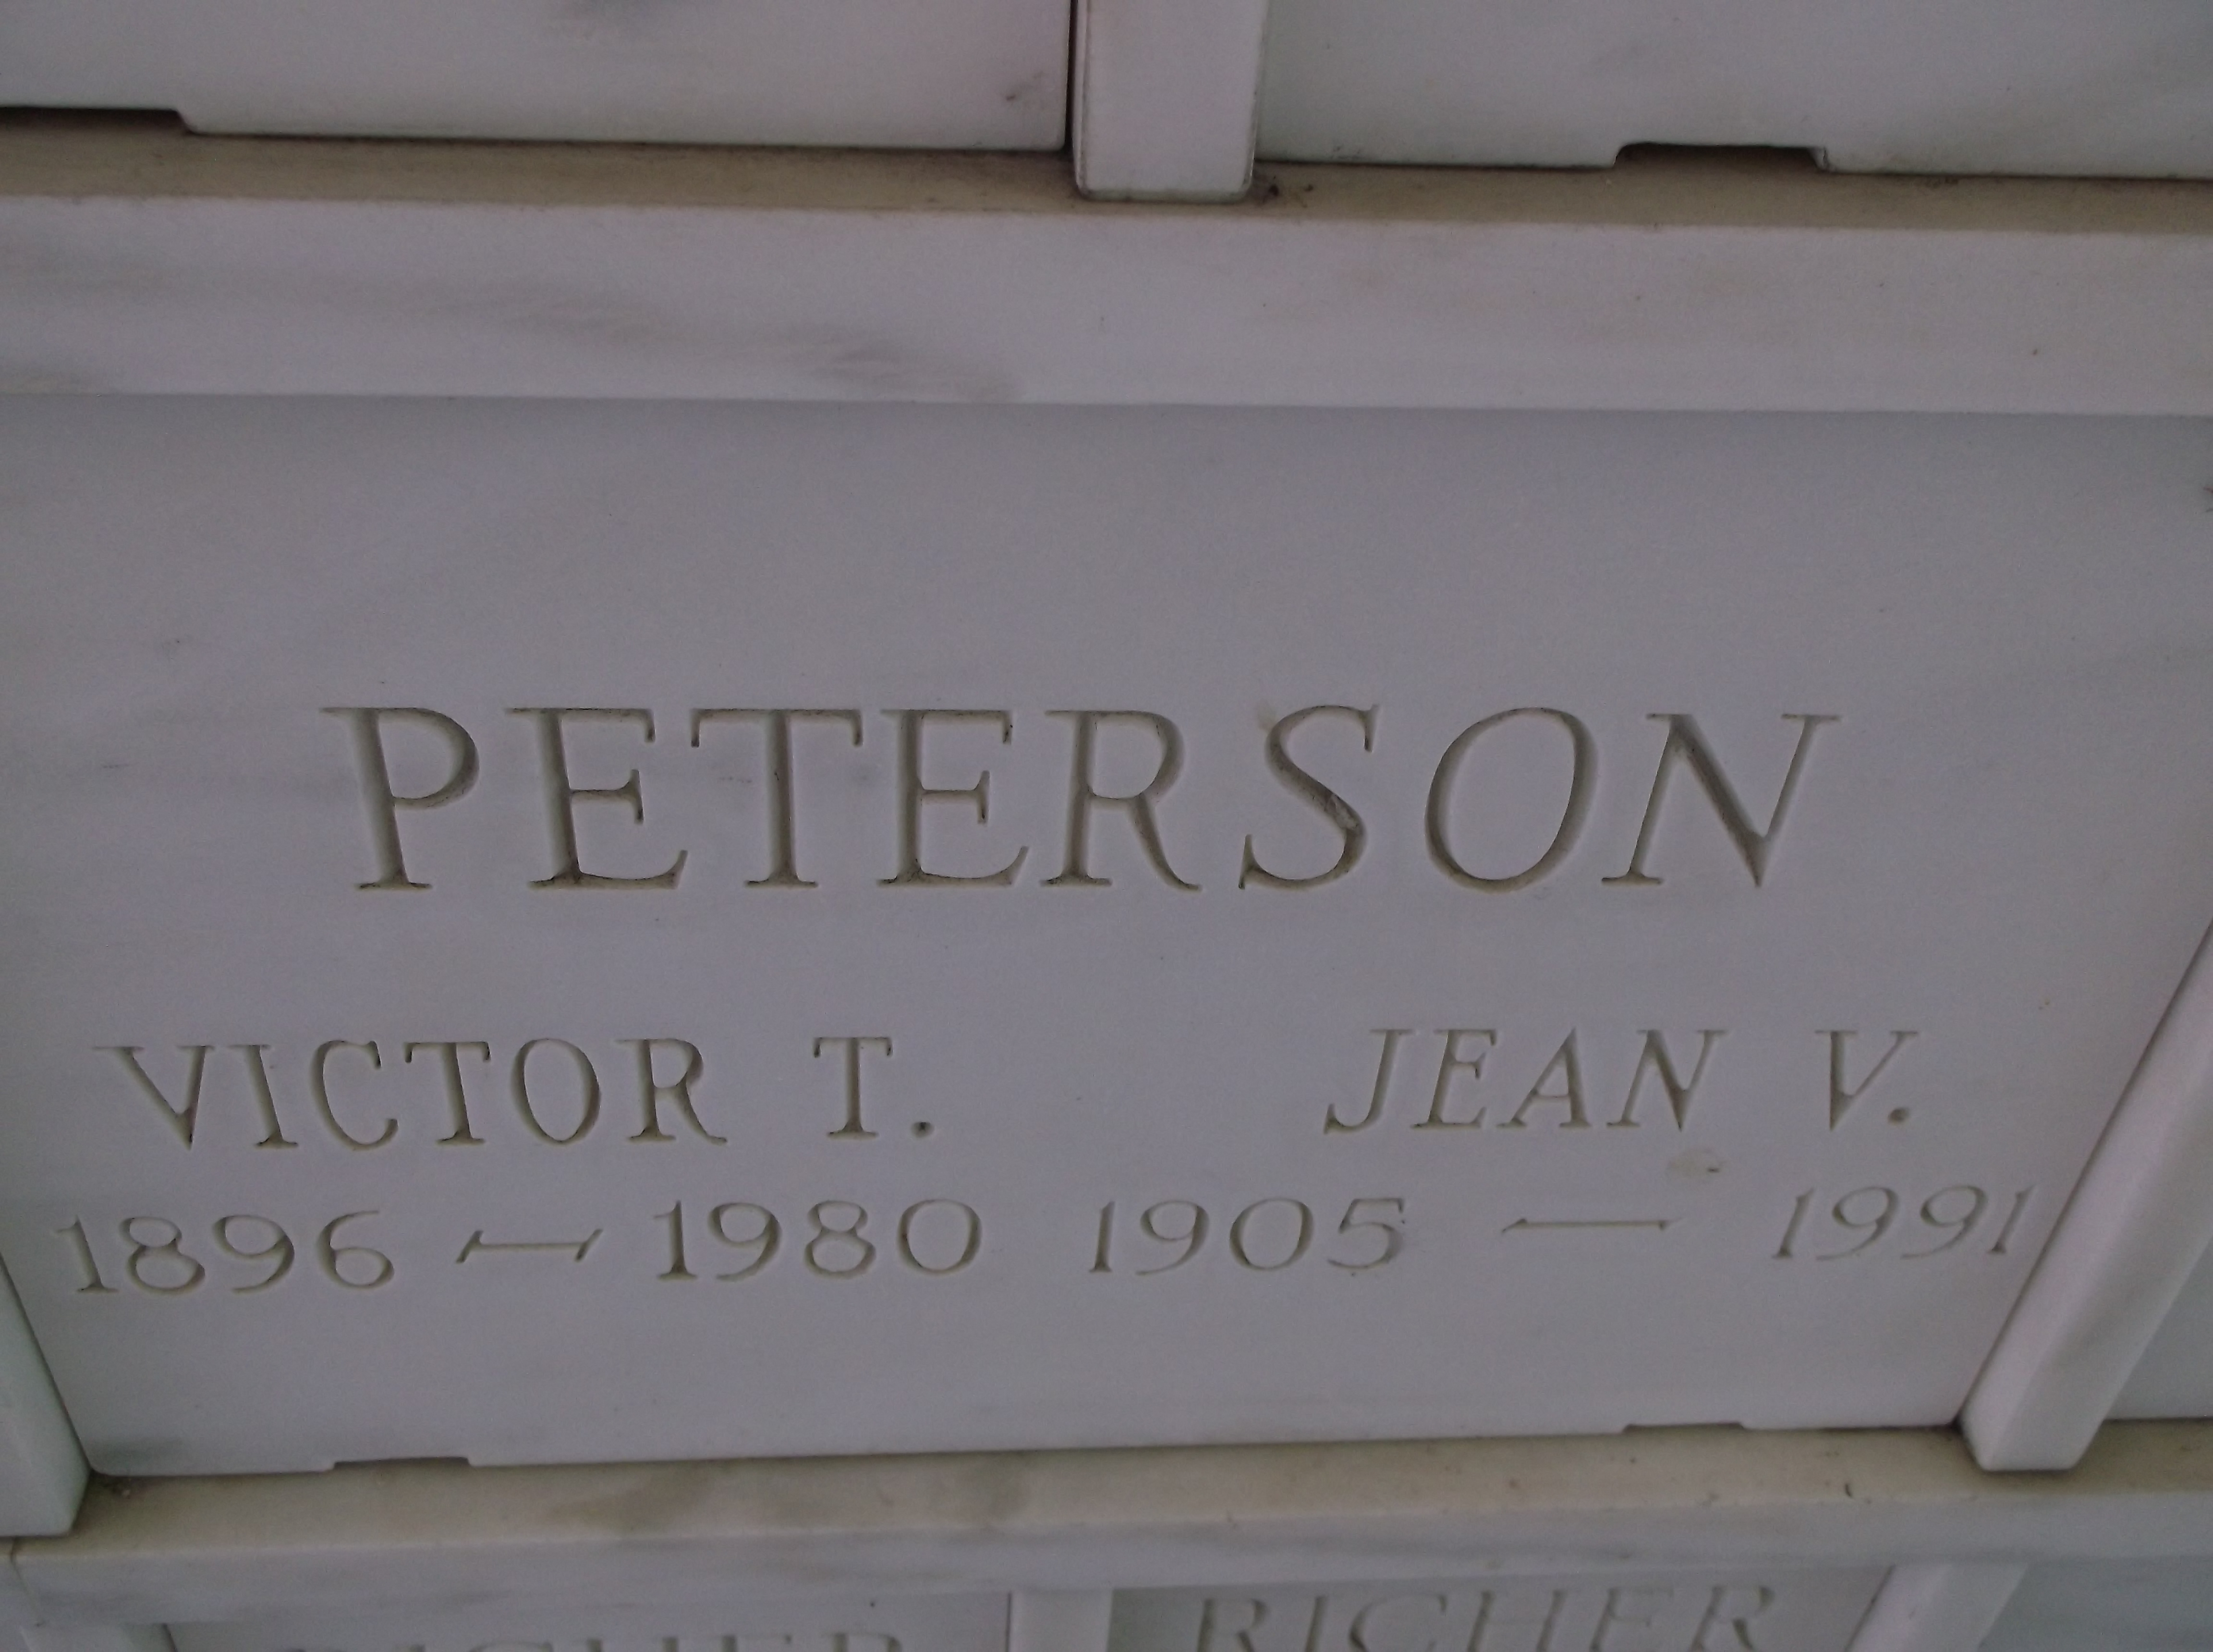 Jean V Peterson